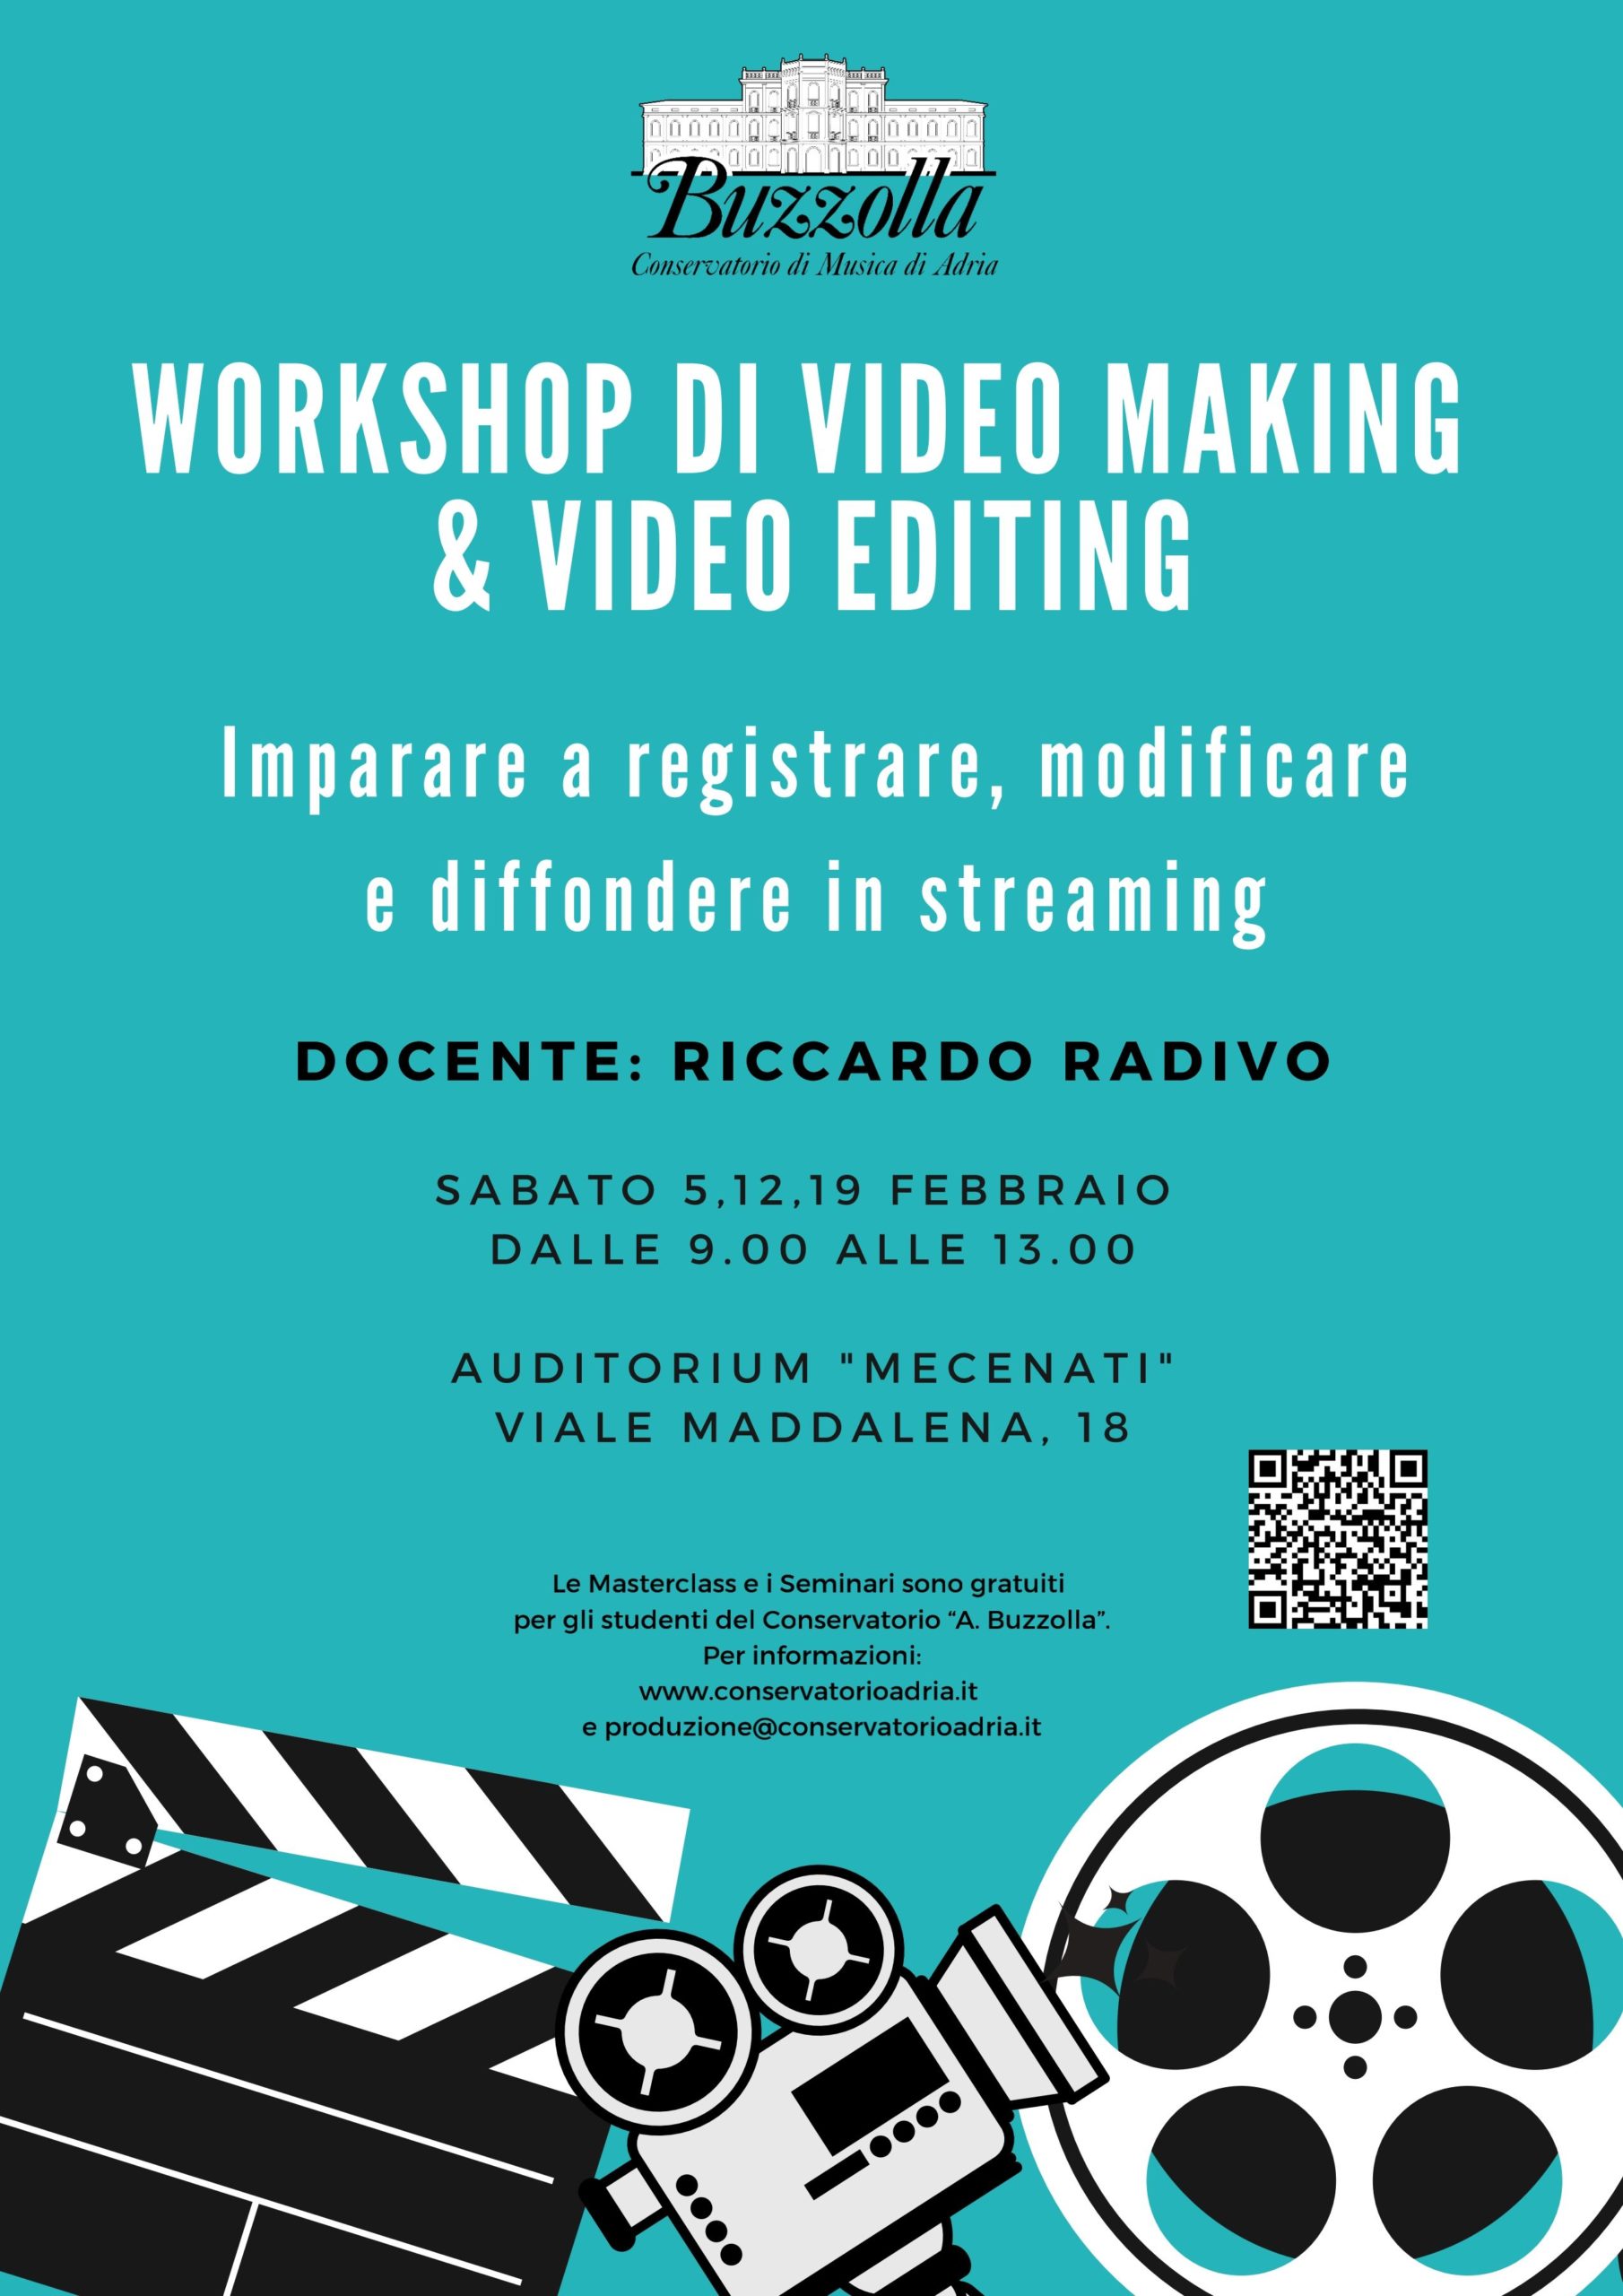 Workshop di Video Making & Video Editing